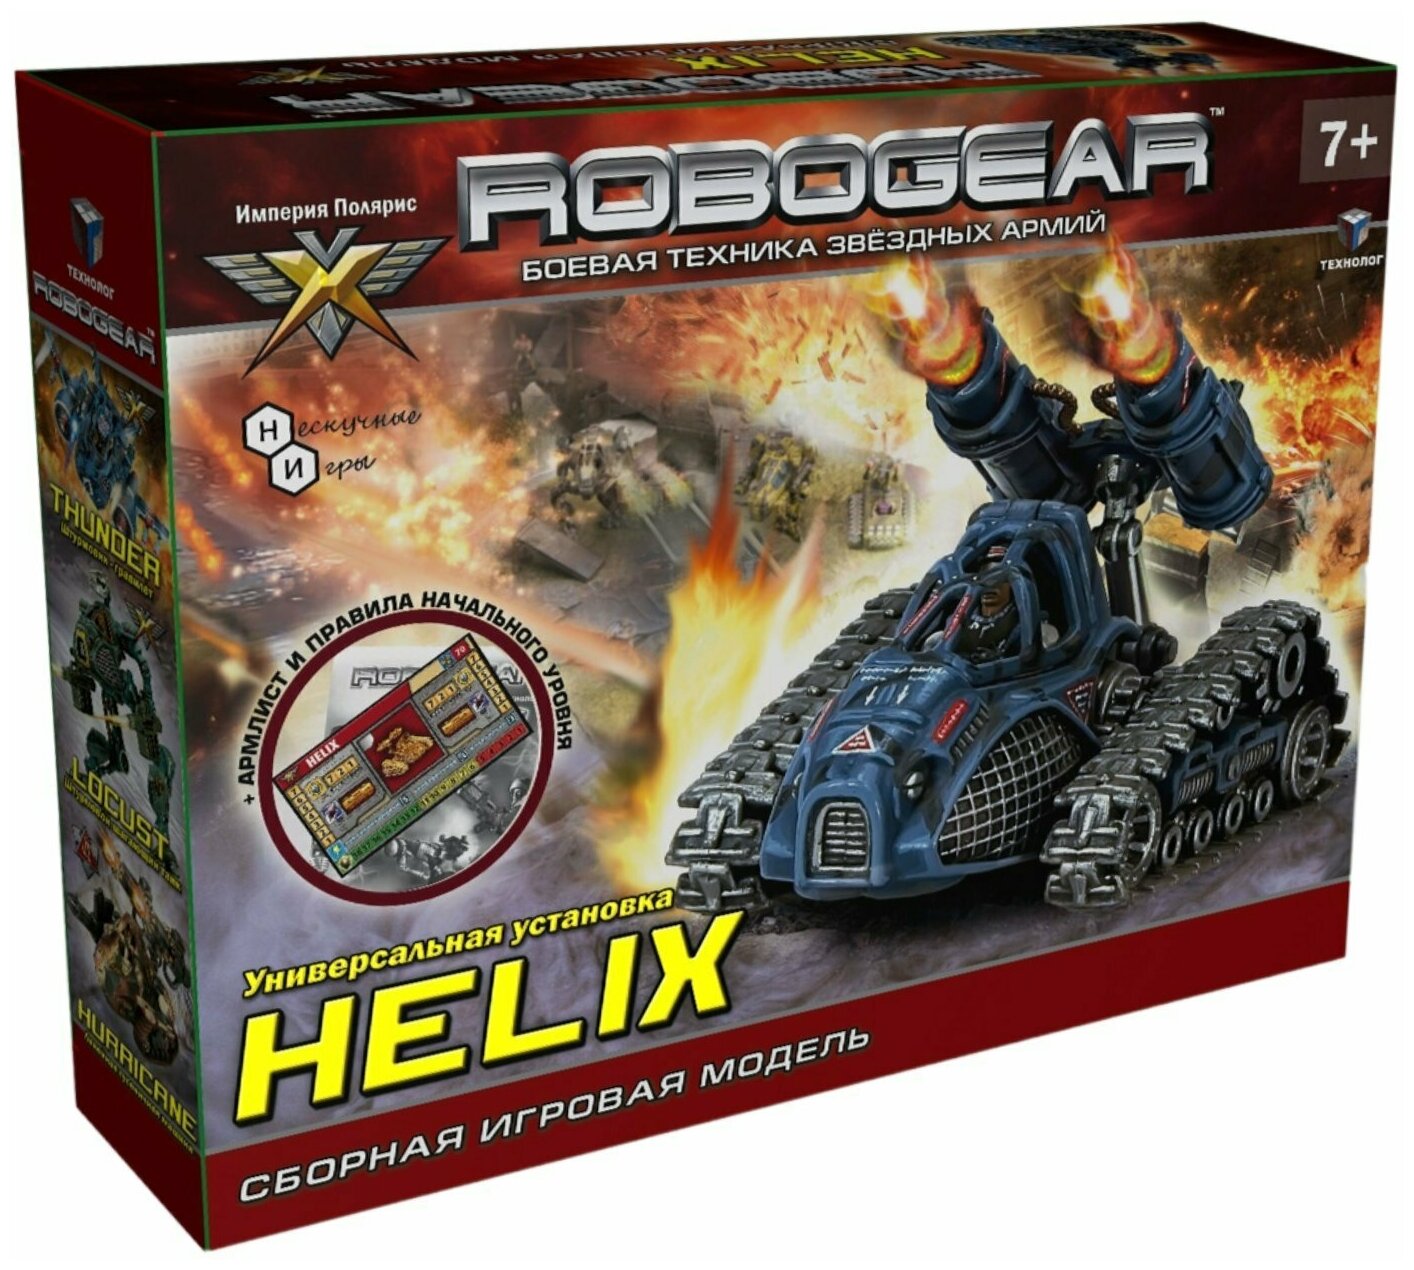 Сборная игровая модель самоходная установка "HELIX" Хеликс 00101 Технолог